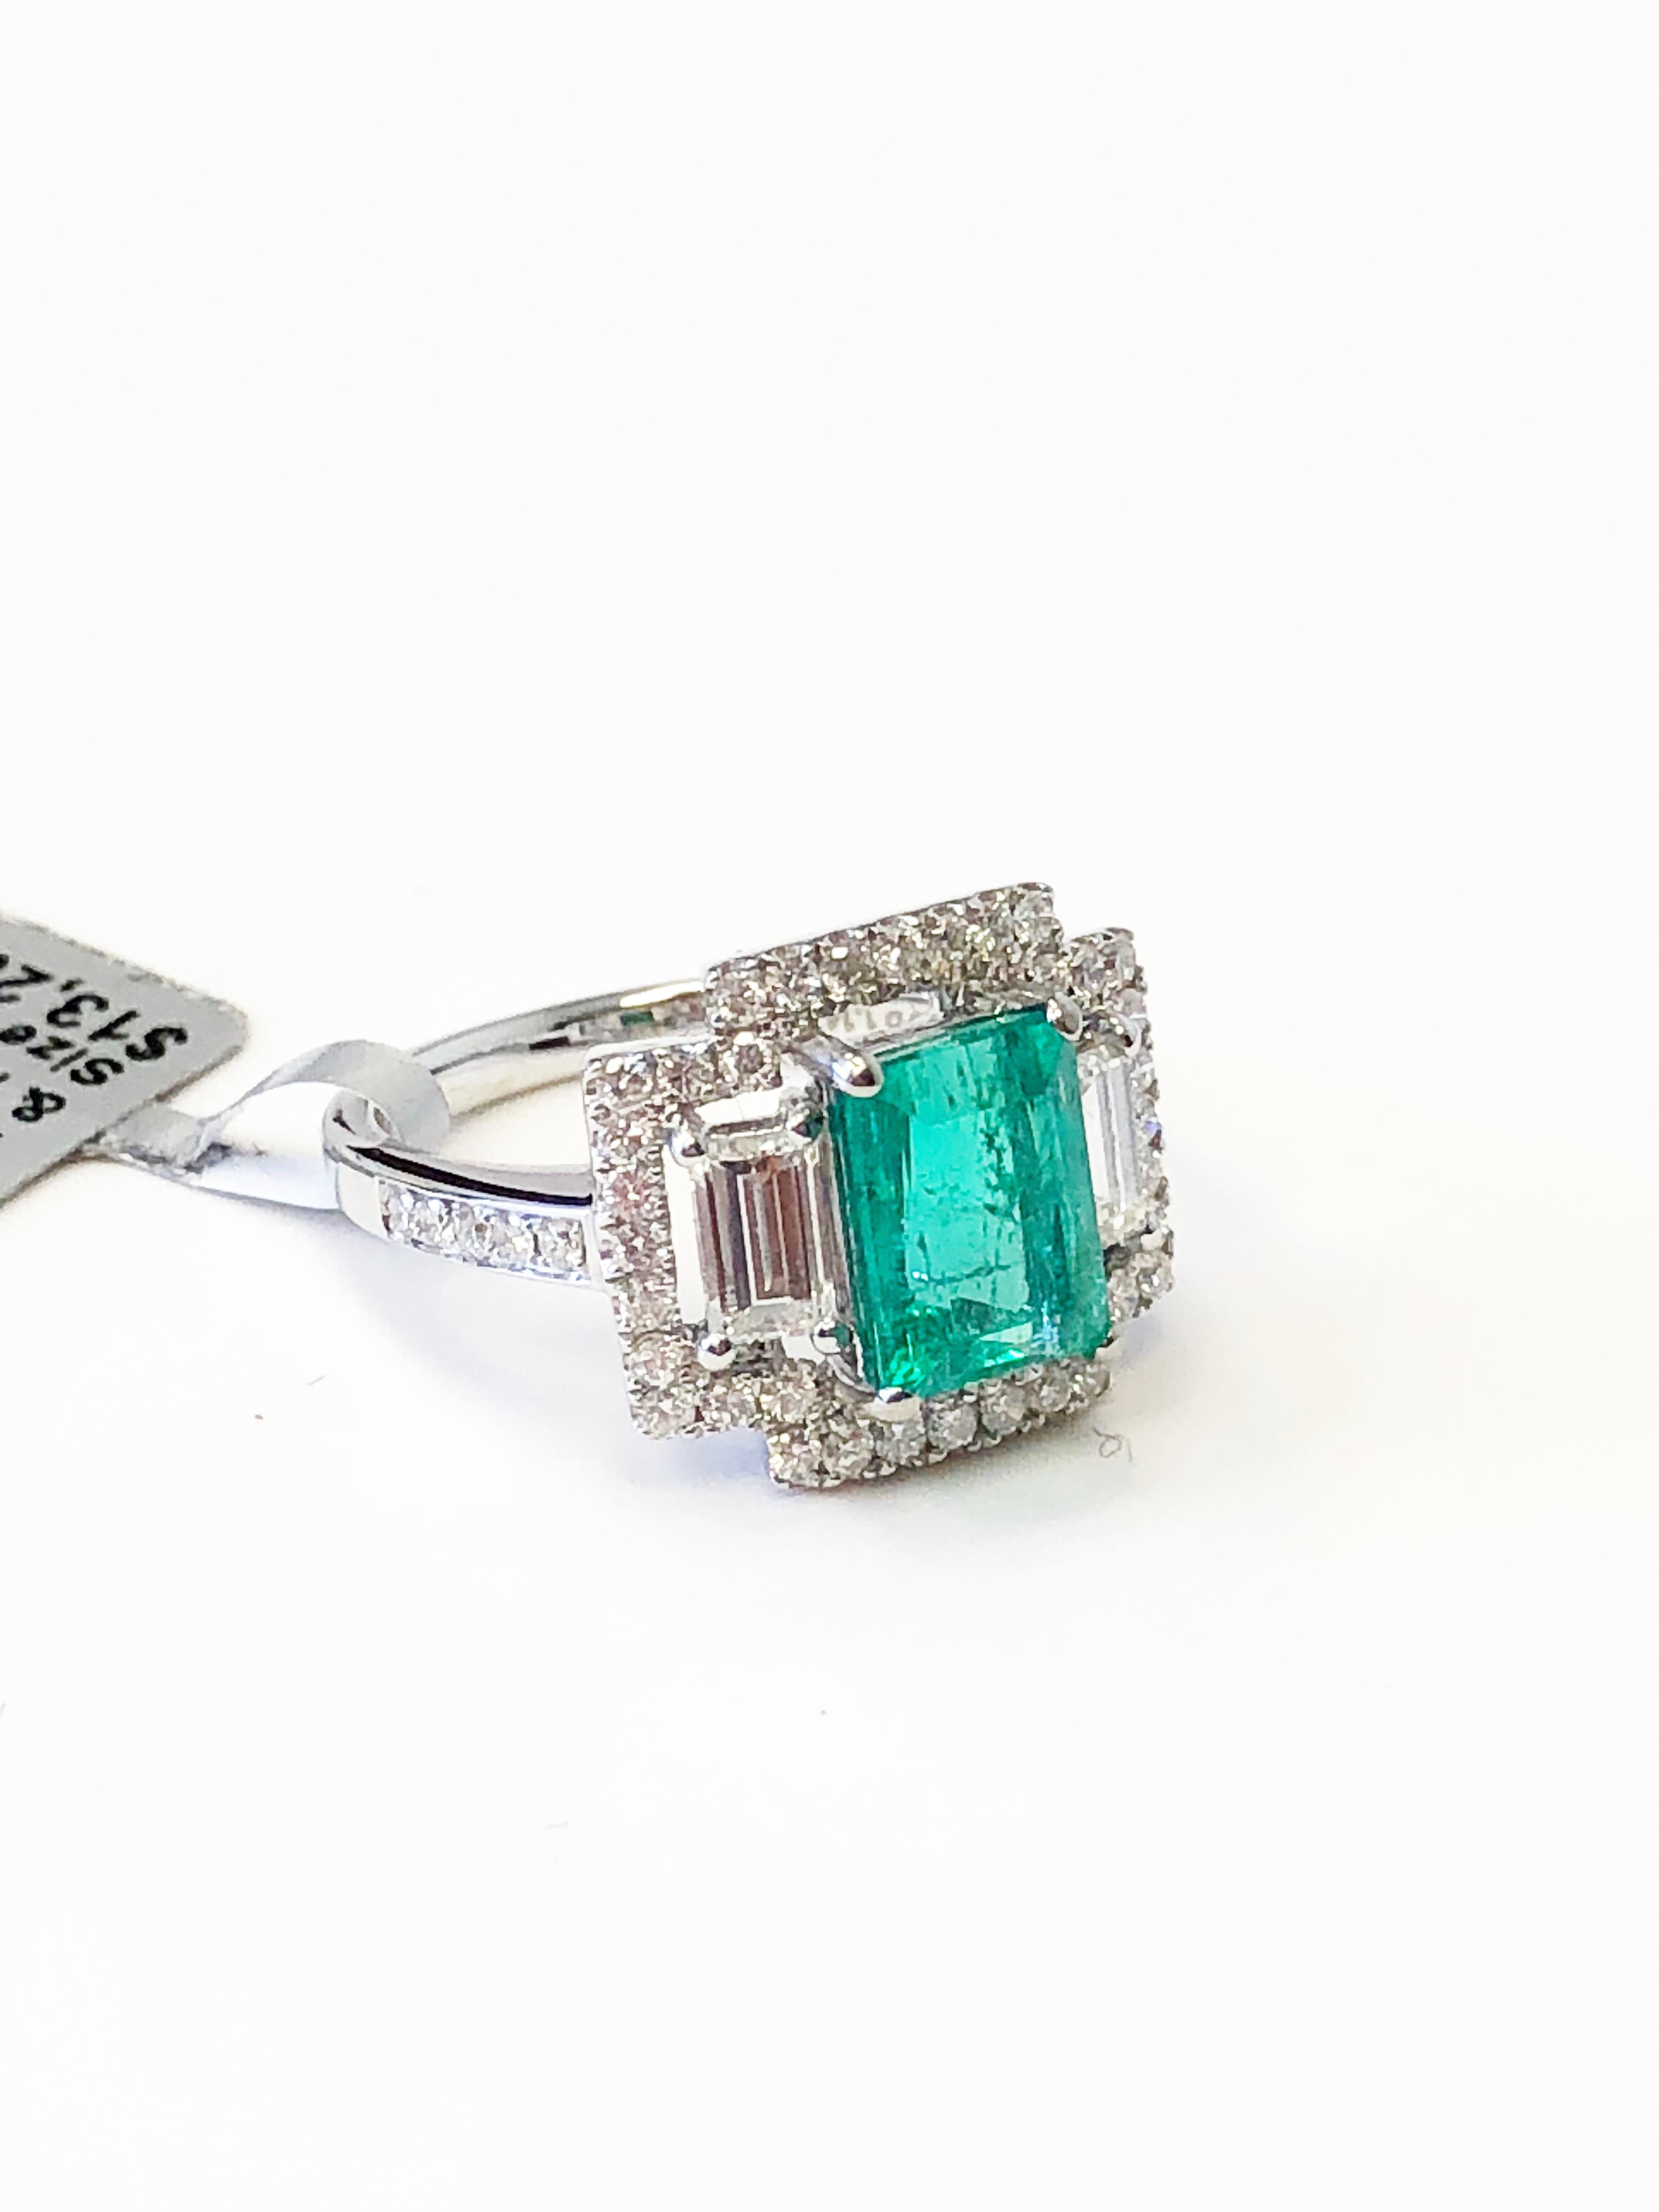 Glänzender Smaragd im Smaragdschliff mit einem Gewicht von 2,05 Karat, umgeben von 1,14 Karat Diamanten im Smaragdschliff und runden Diamanten in einer handgefertigten Fassung aus 18 Karat Weißgold.  Die Ringgröße ist 6.  Eine schöne Ergänzung für